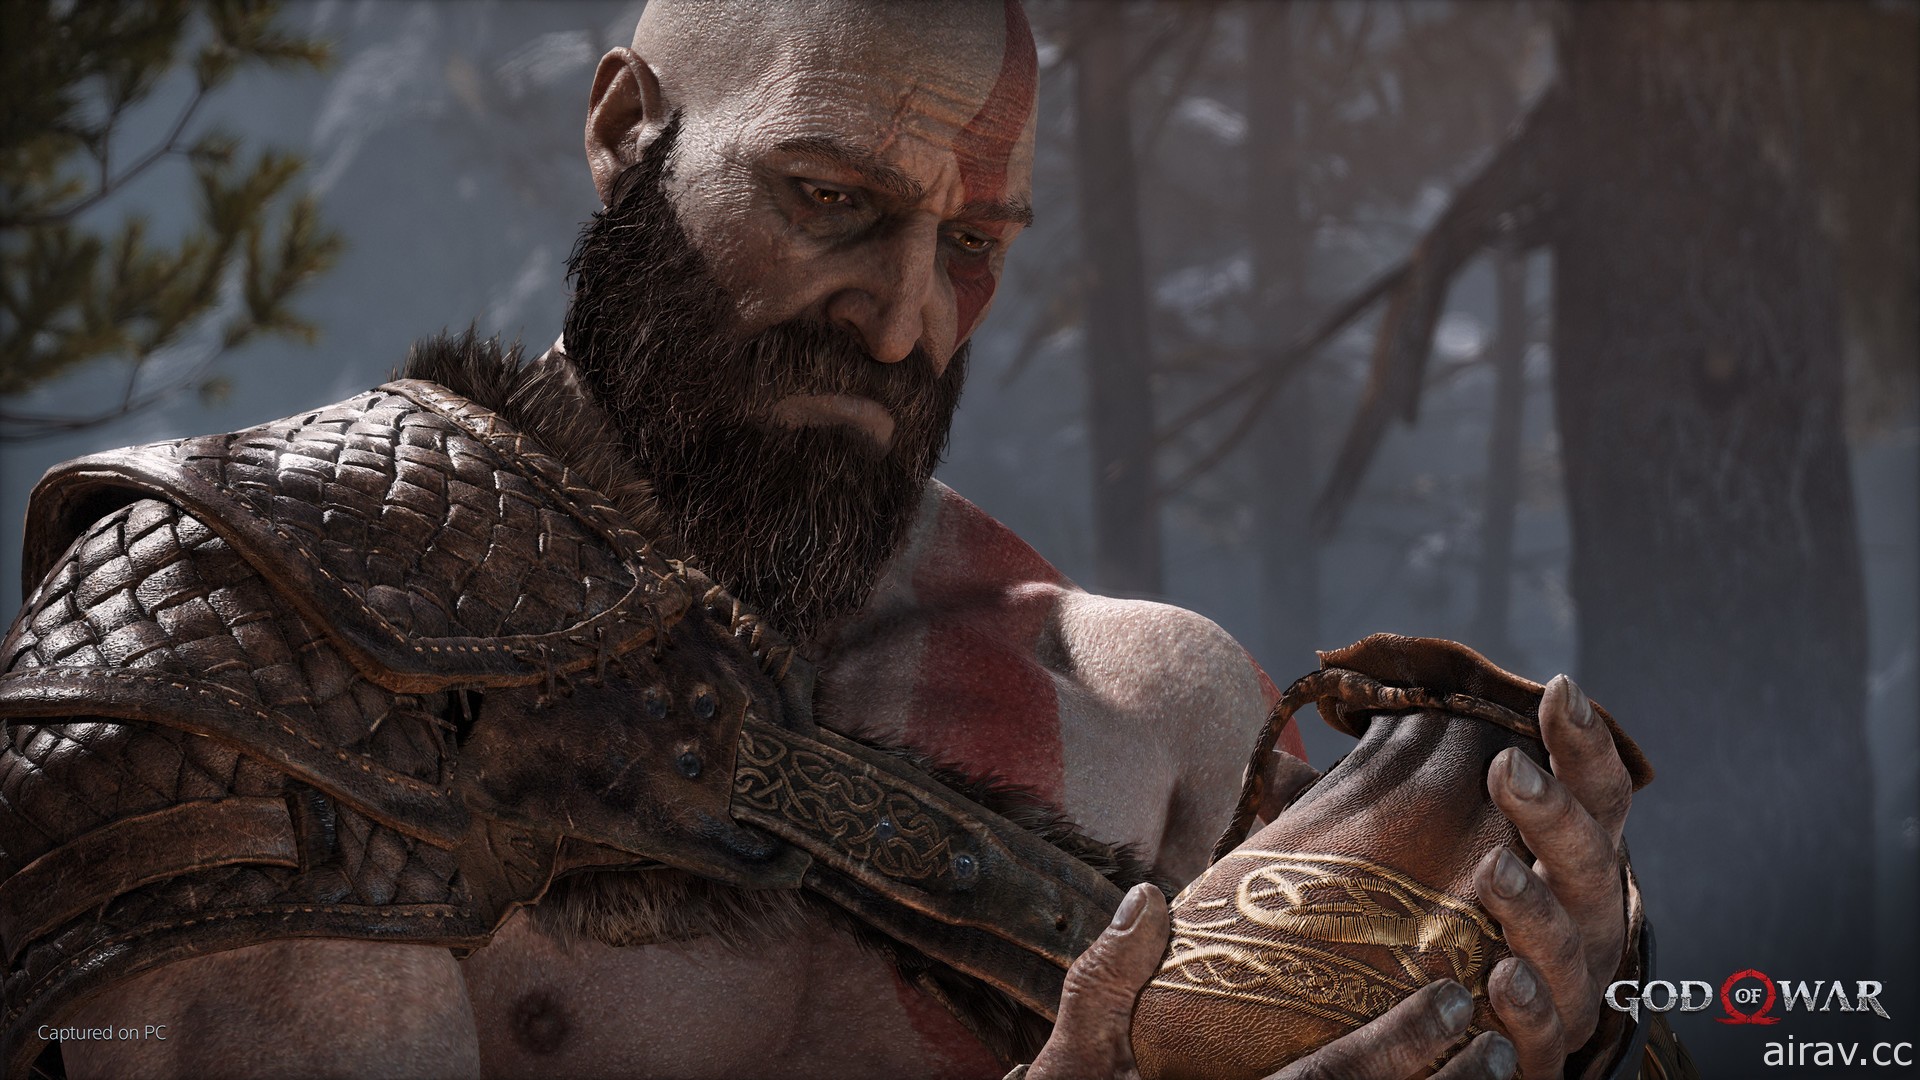 PlayStation 招牌作品《战神 God of War》宣布明年一月登陆 PC 平台